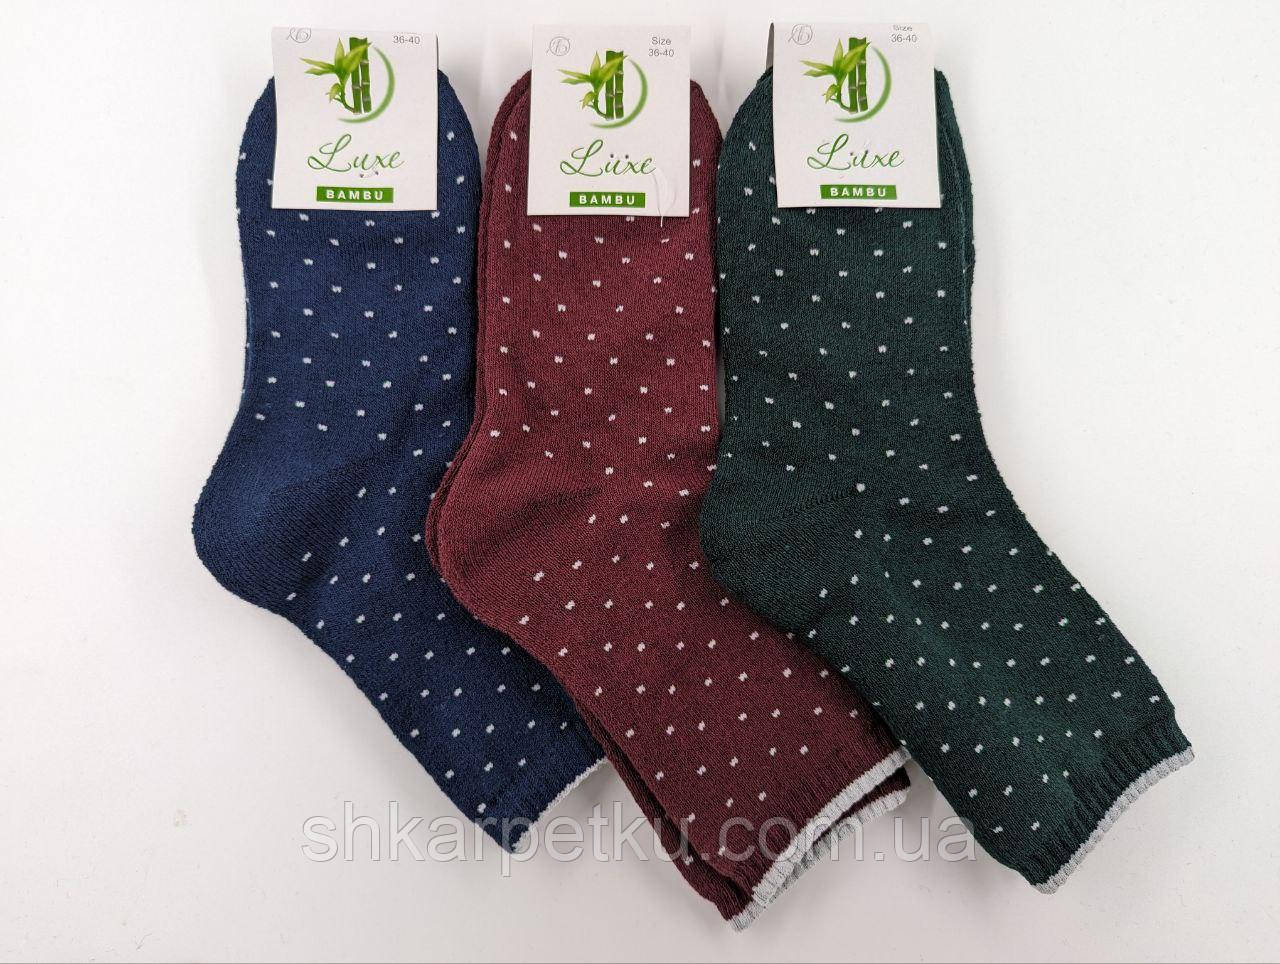 Жіночі термо шкарпетки махрові Житомир Люкс в горошок  36-40 мікс кольорів 12 пар/уп